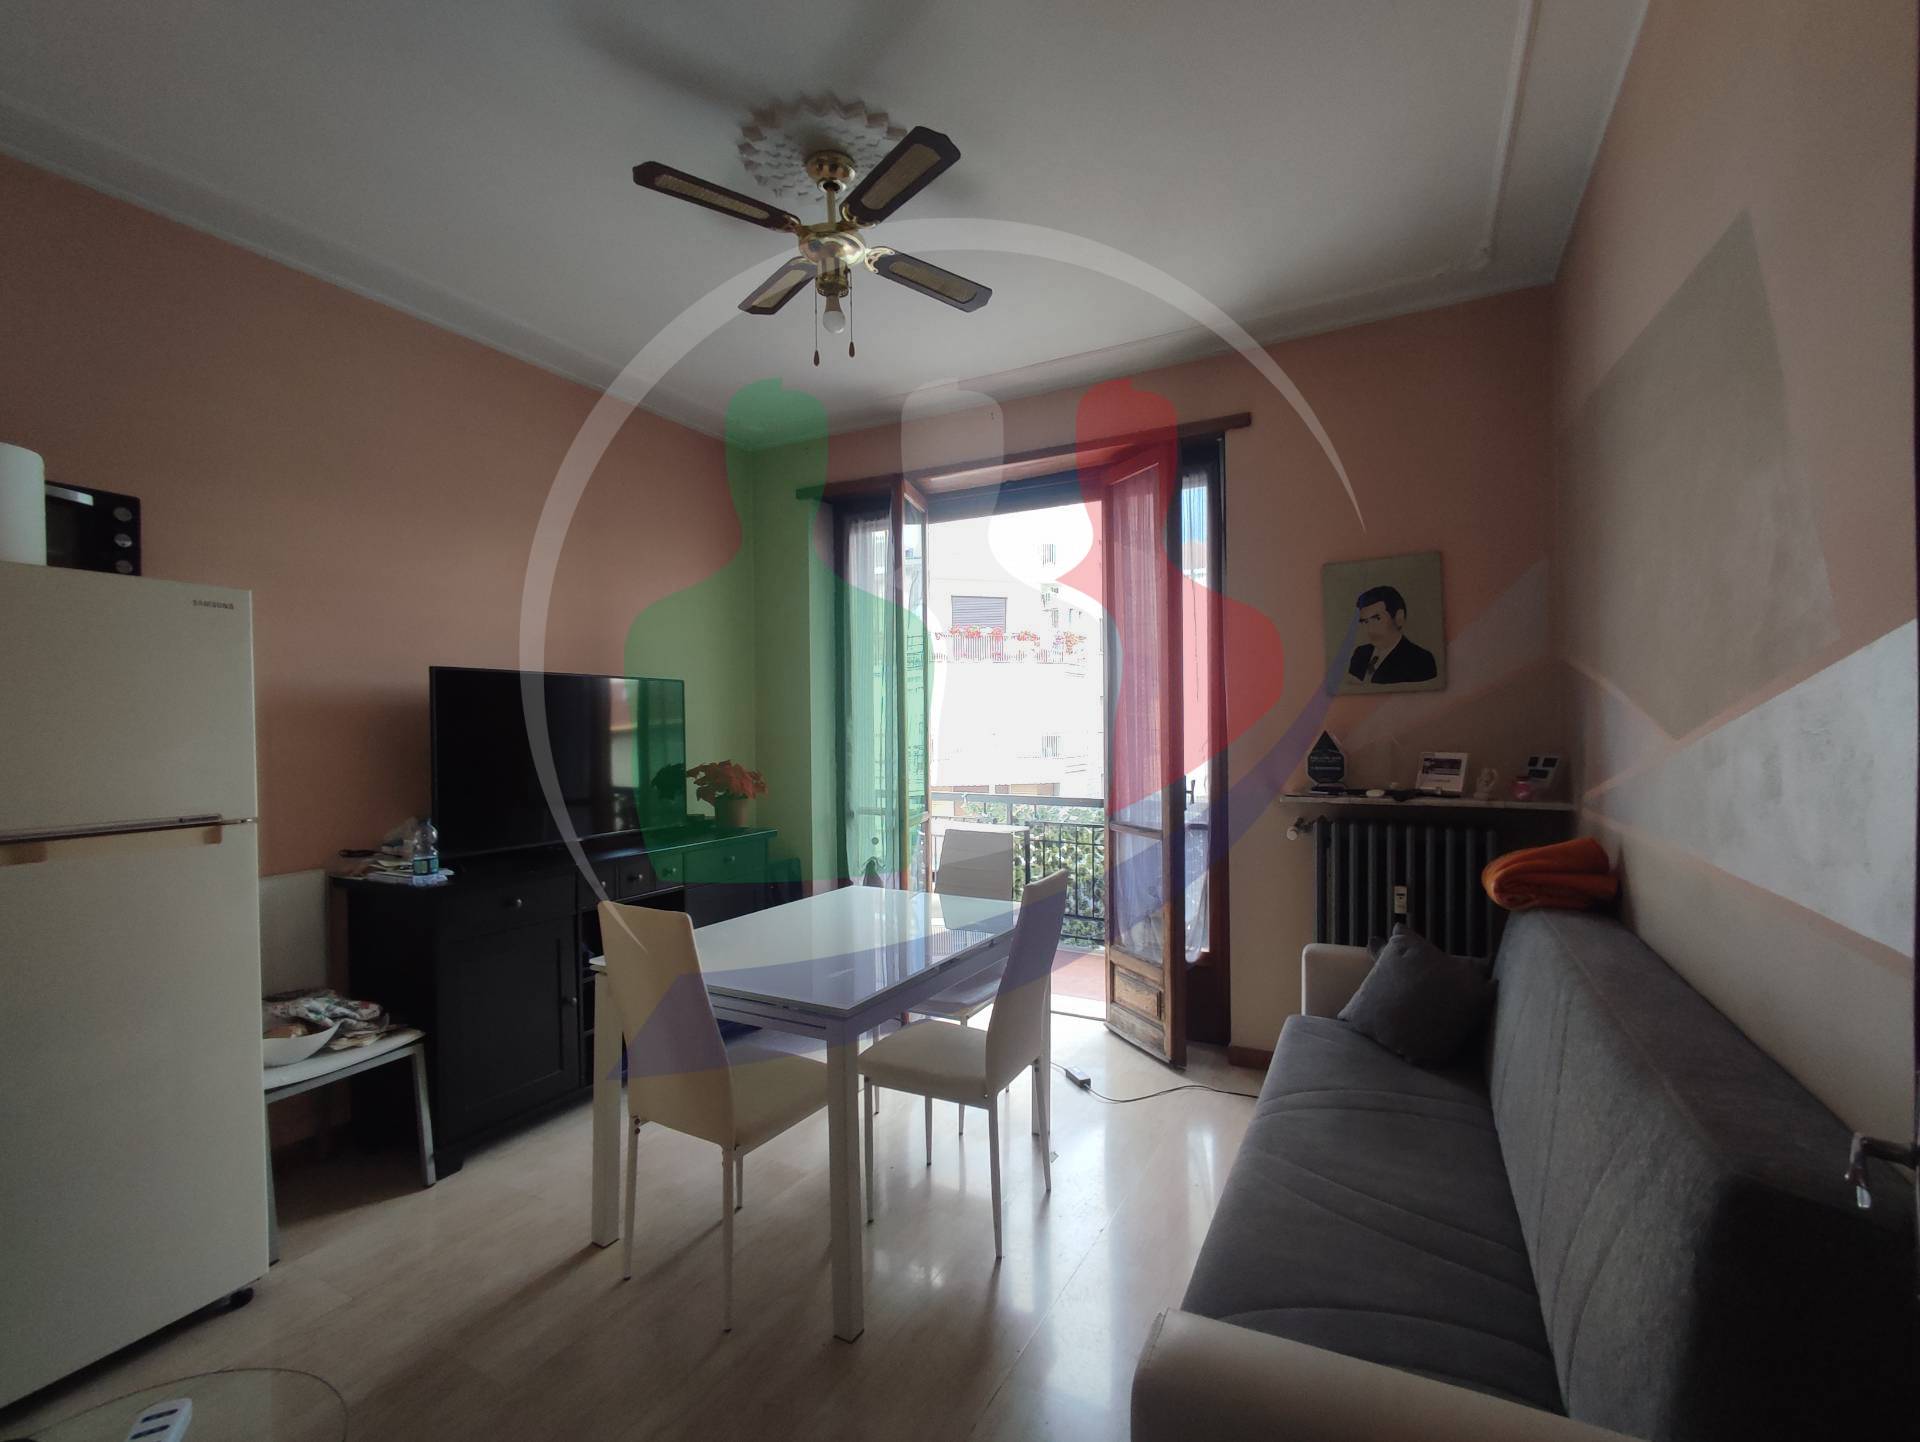 Appartamento in vendita a Nichelino, 2 locali, prezzo € 70.000 | PortaleAgenzieImmobiliari.it